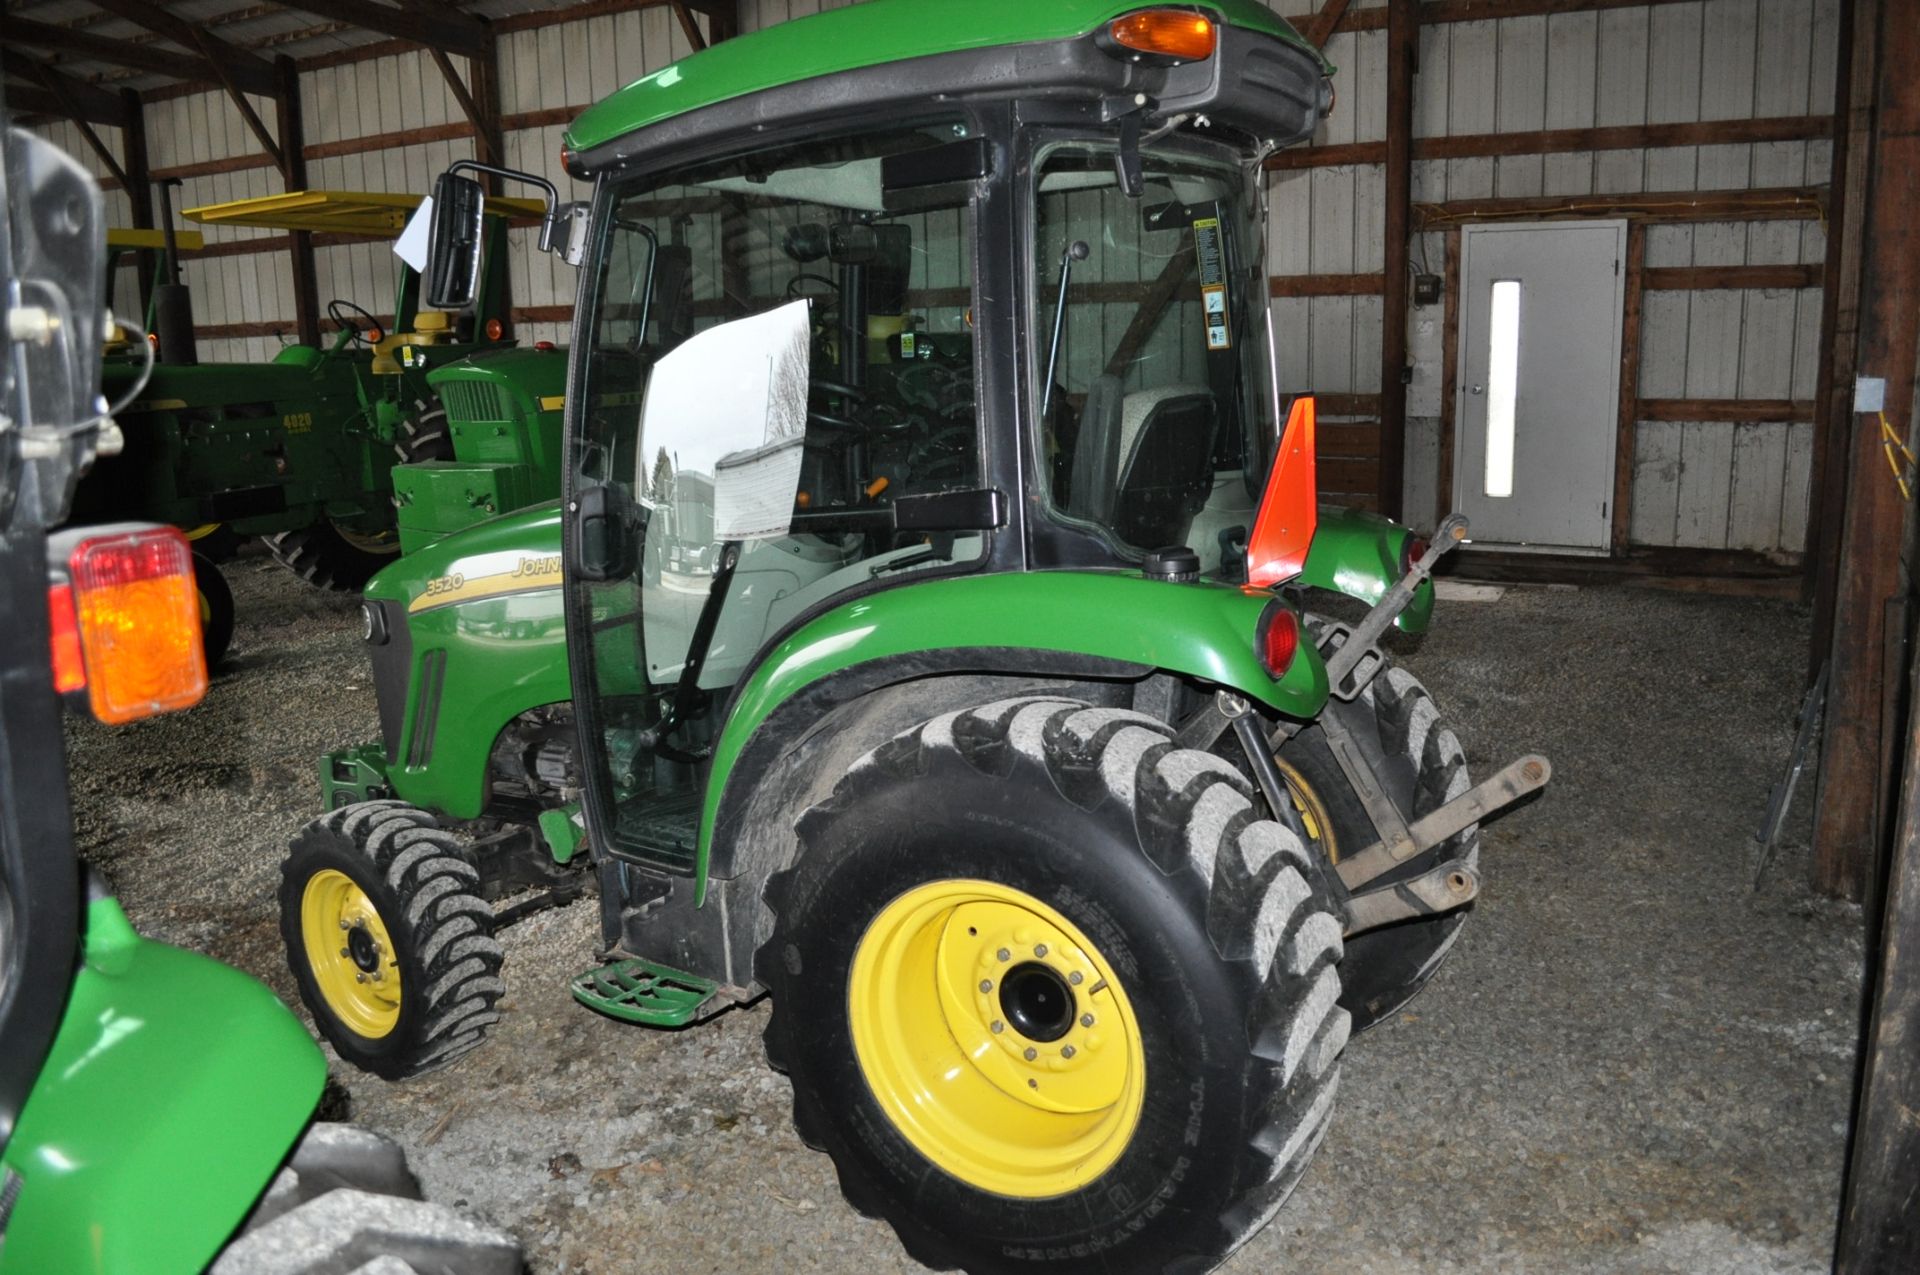 John Deere 3520 utility tractor, MFWD, CHA, loader mount, joystick, 3 pt, 540 pto, 365 hrs - Image 4 of 15